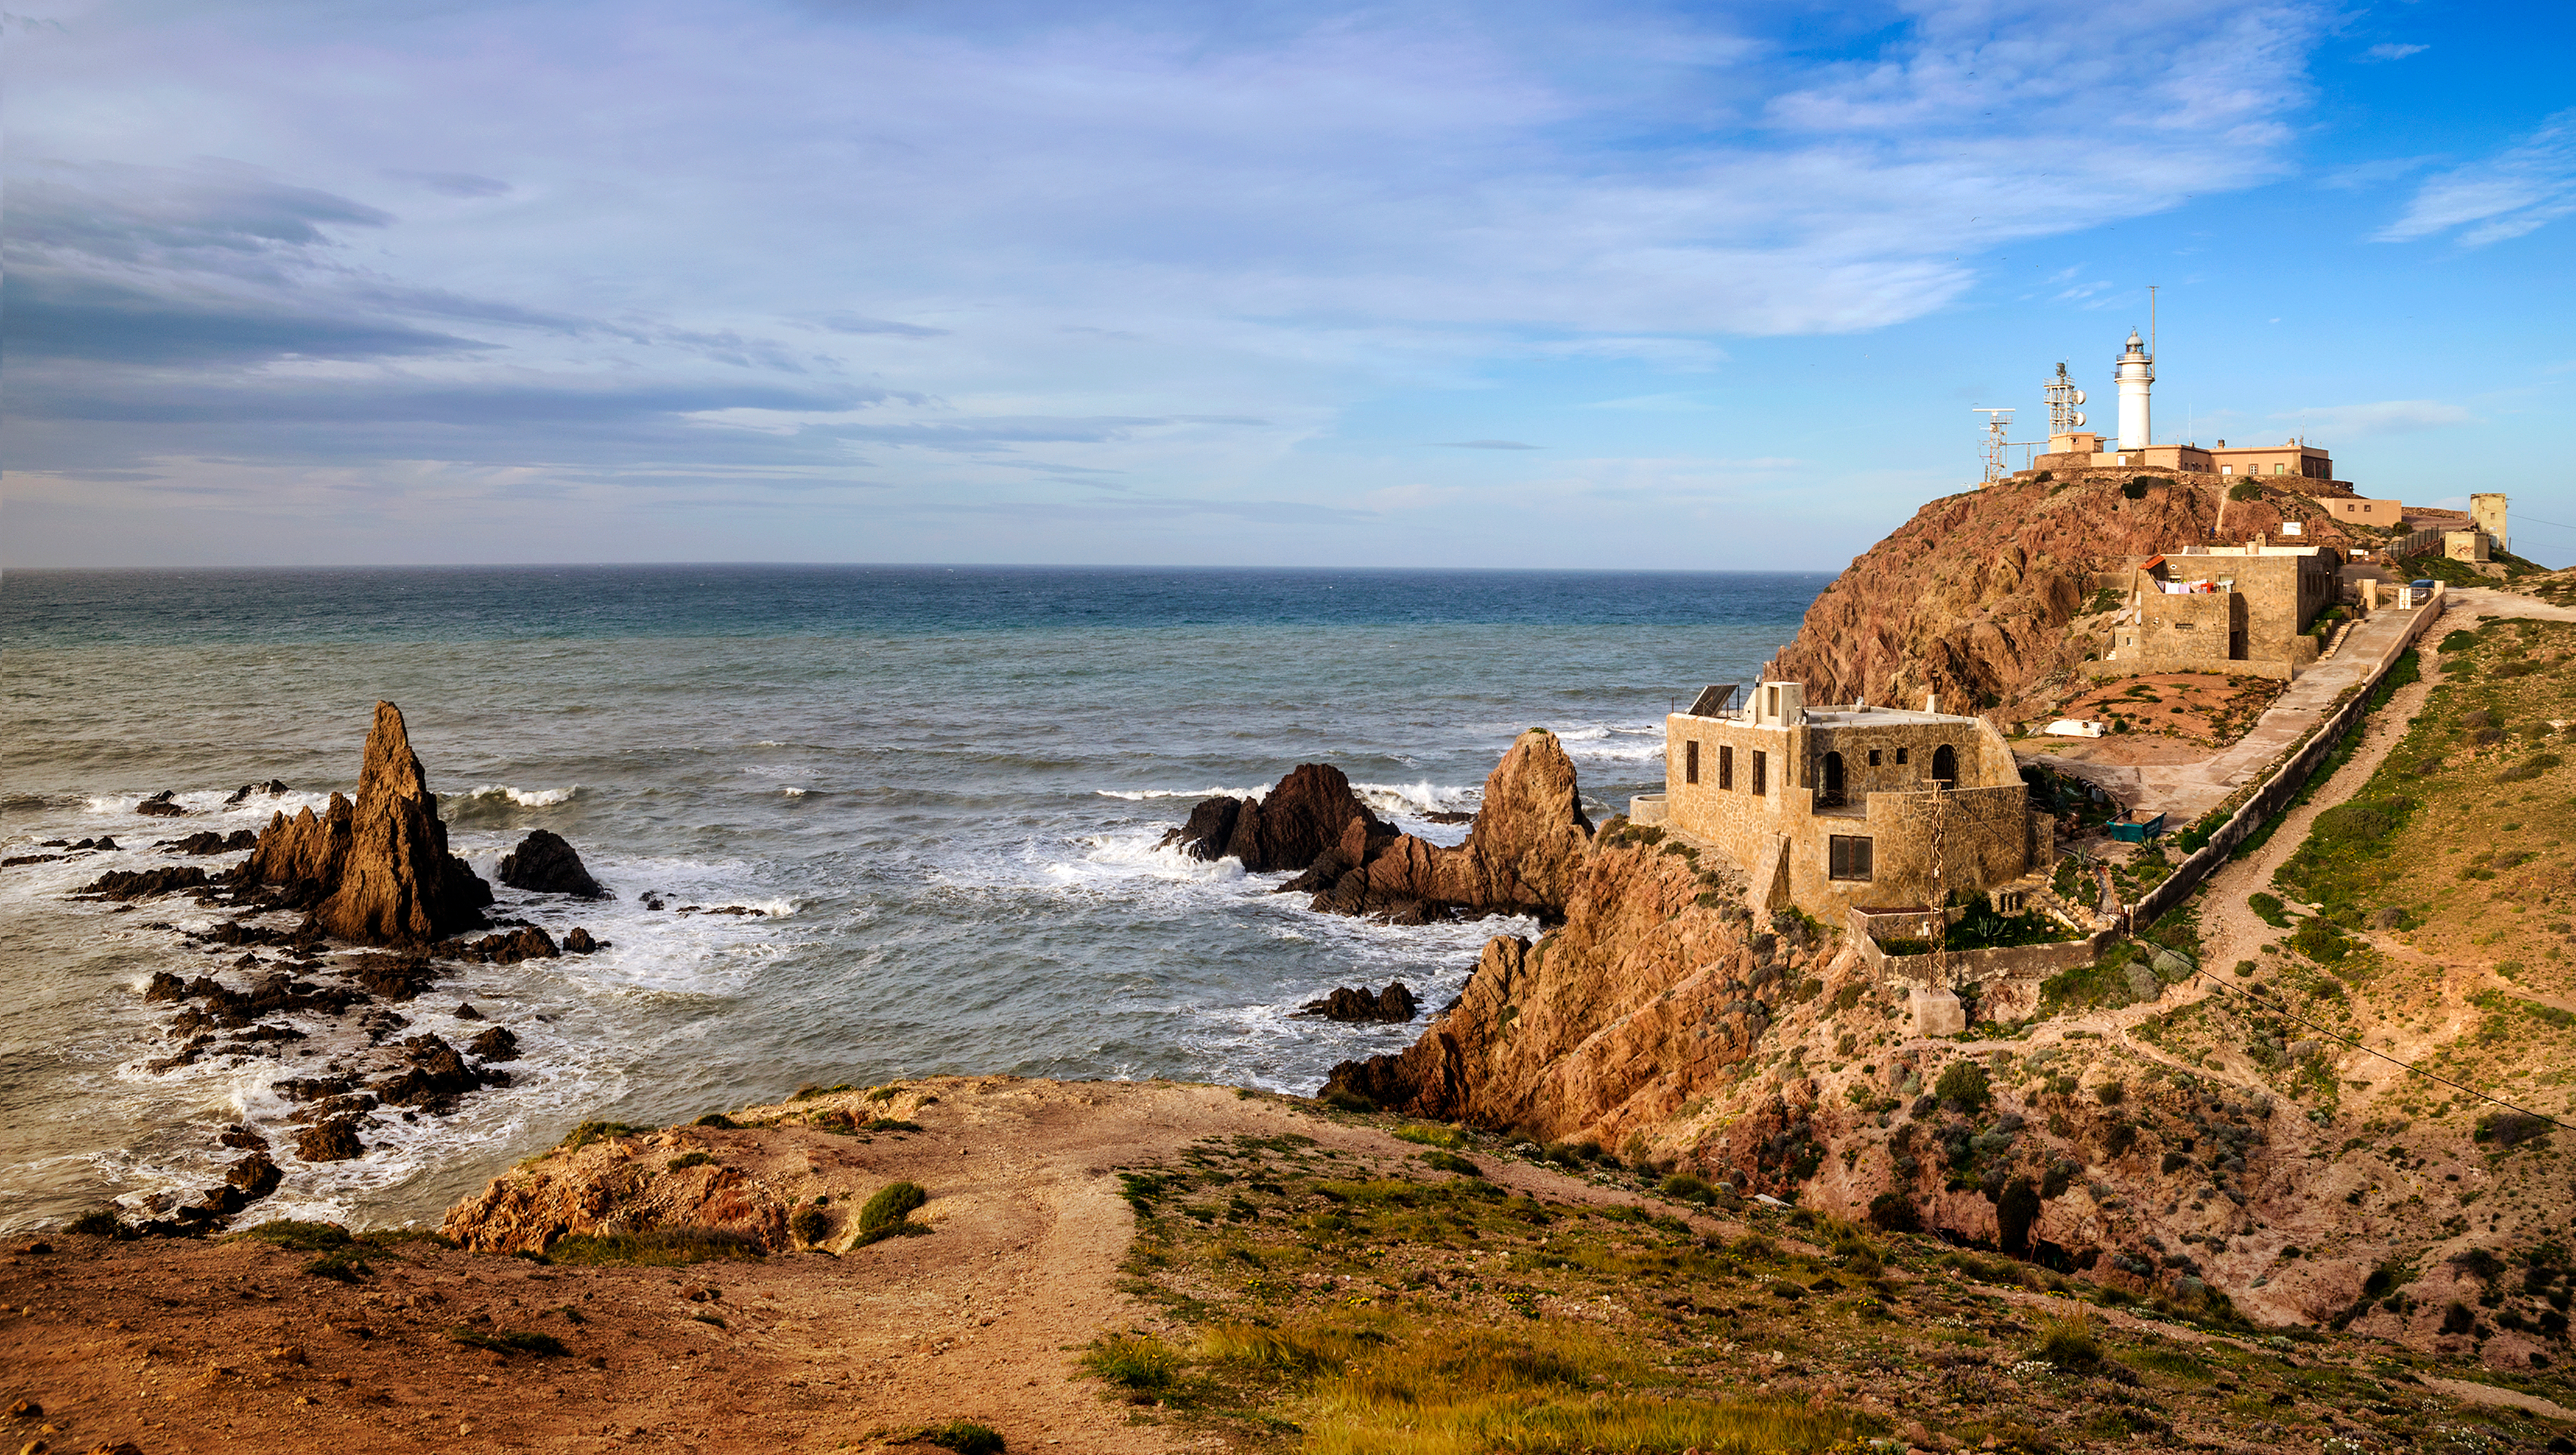 Cabo de Gata © inigolai-Photography / Shutterstock